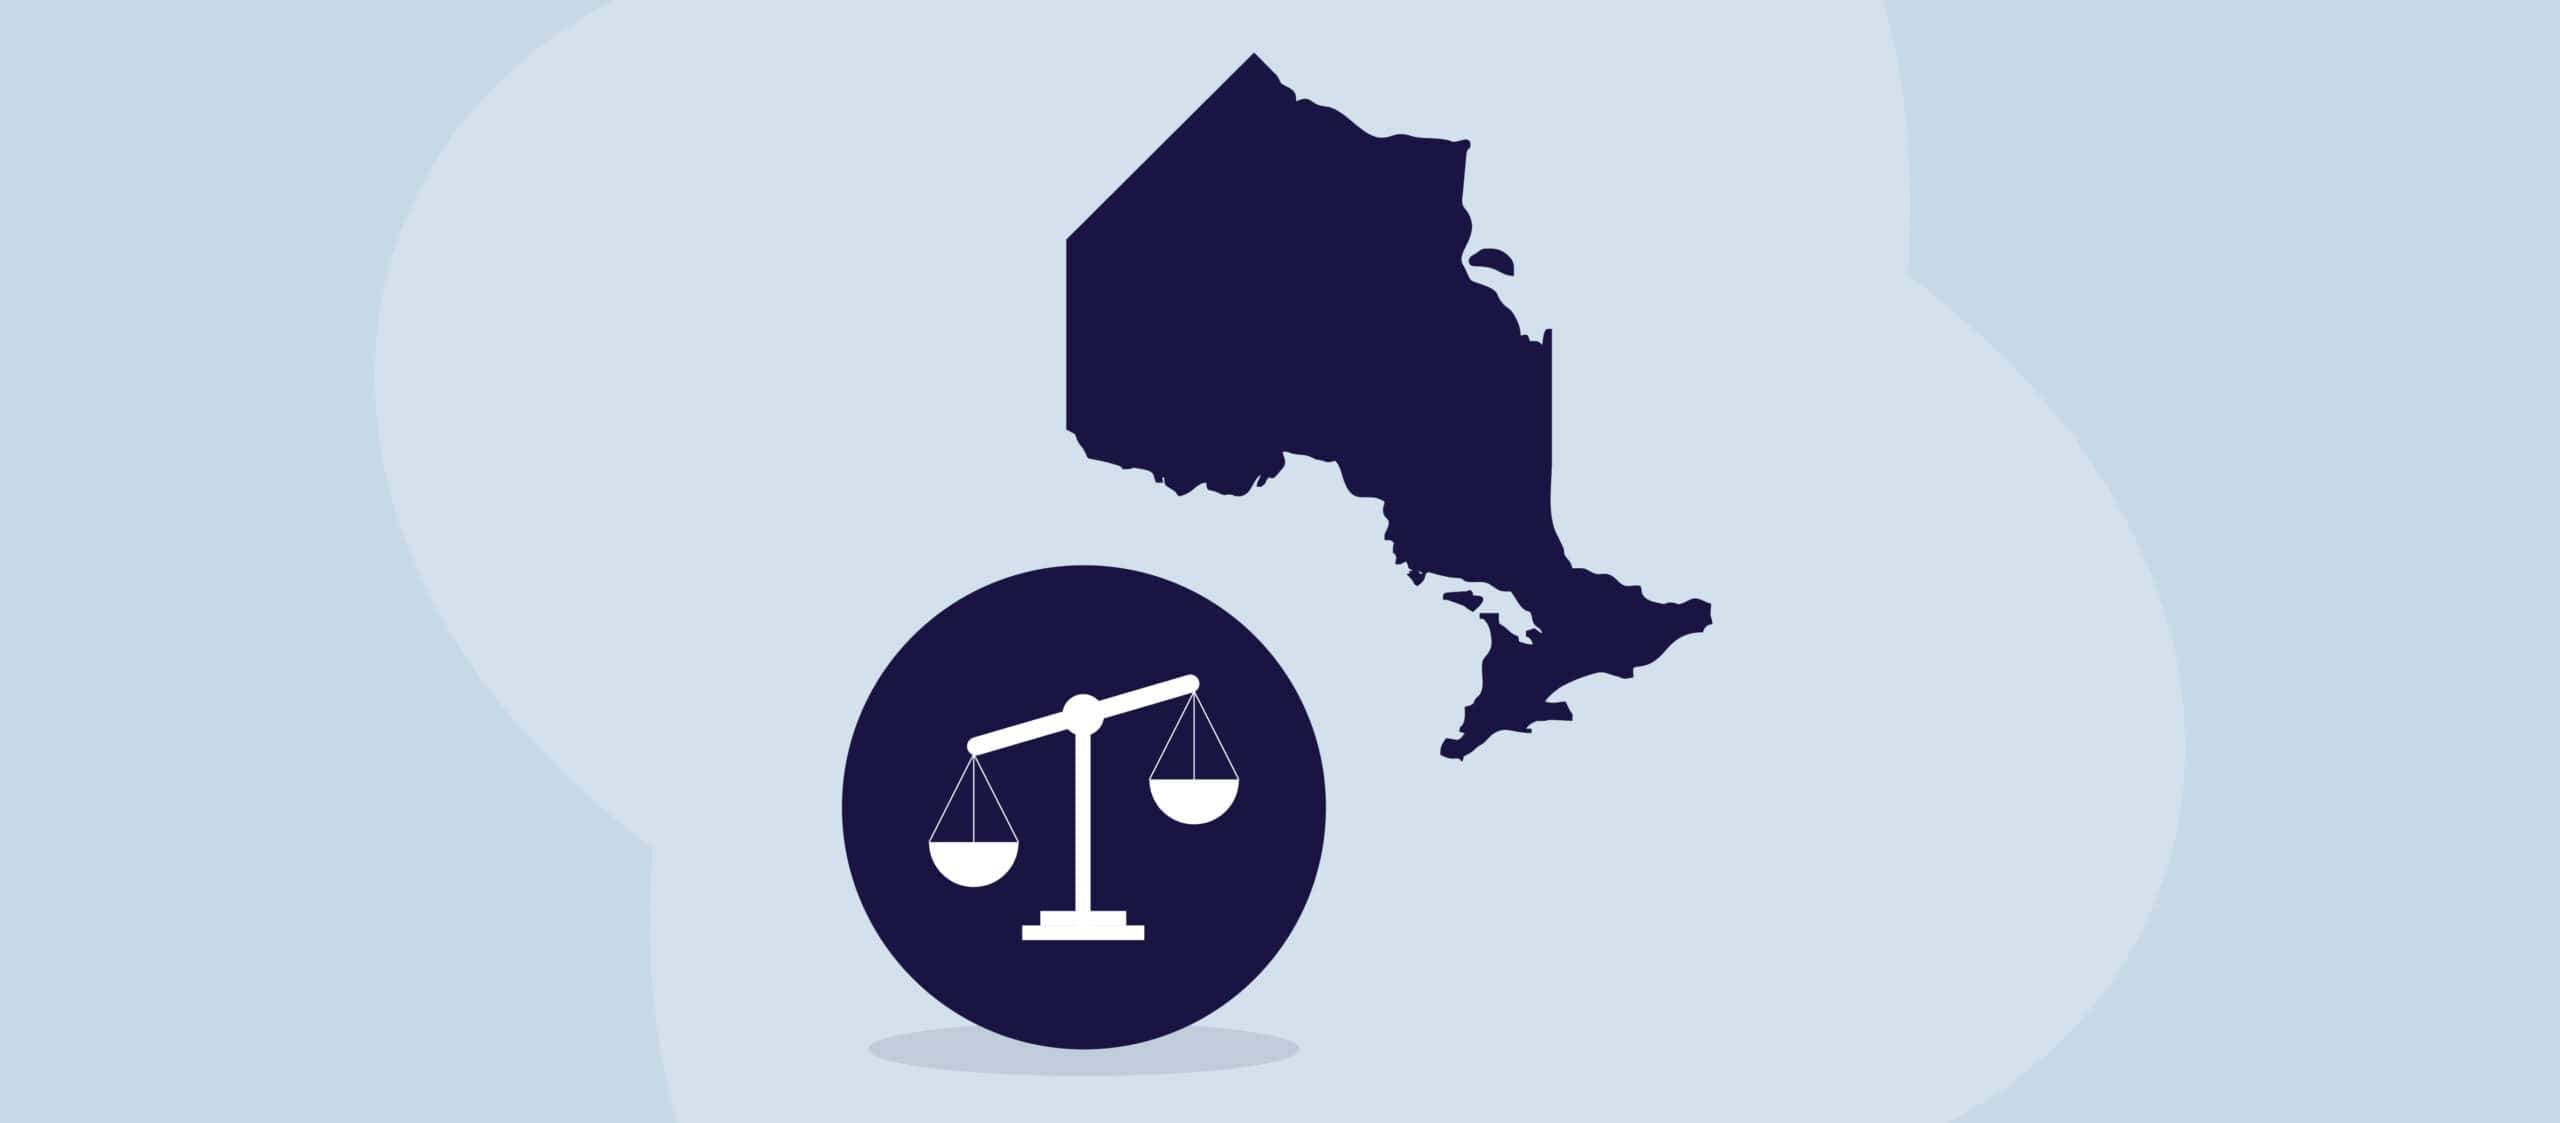 En illustrasjon av provinsen Ontario ved siden av juridiske skalaer.